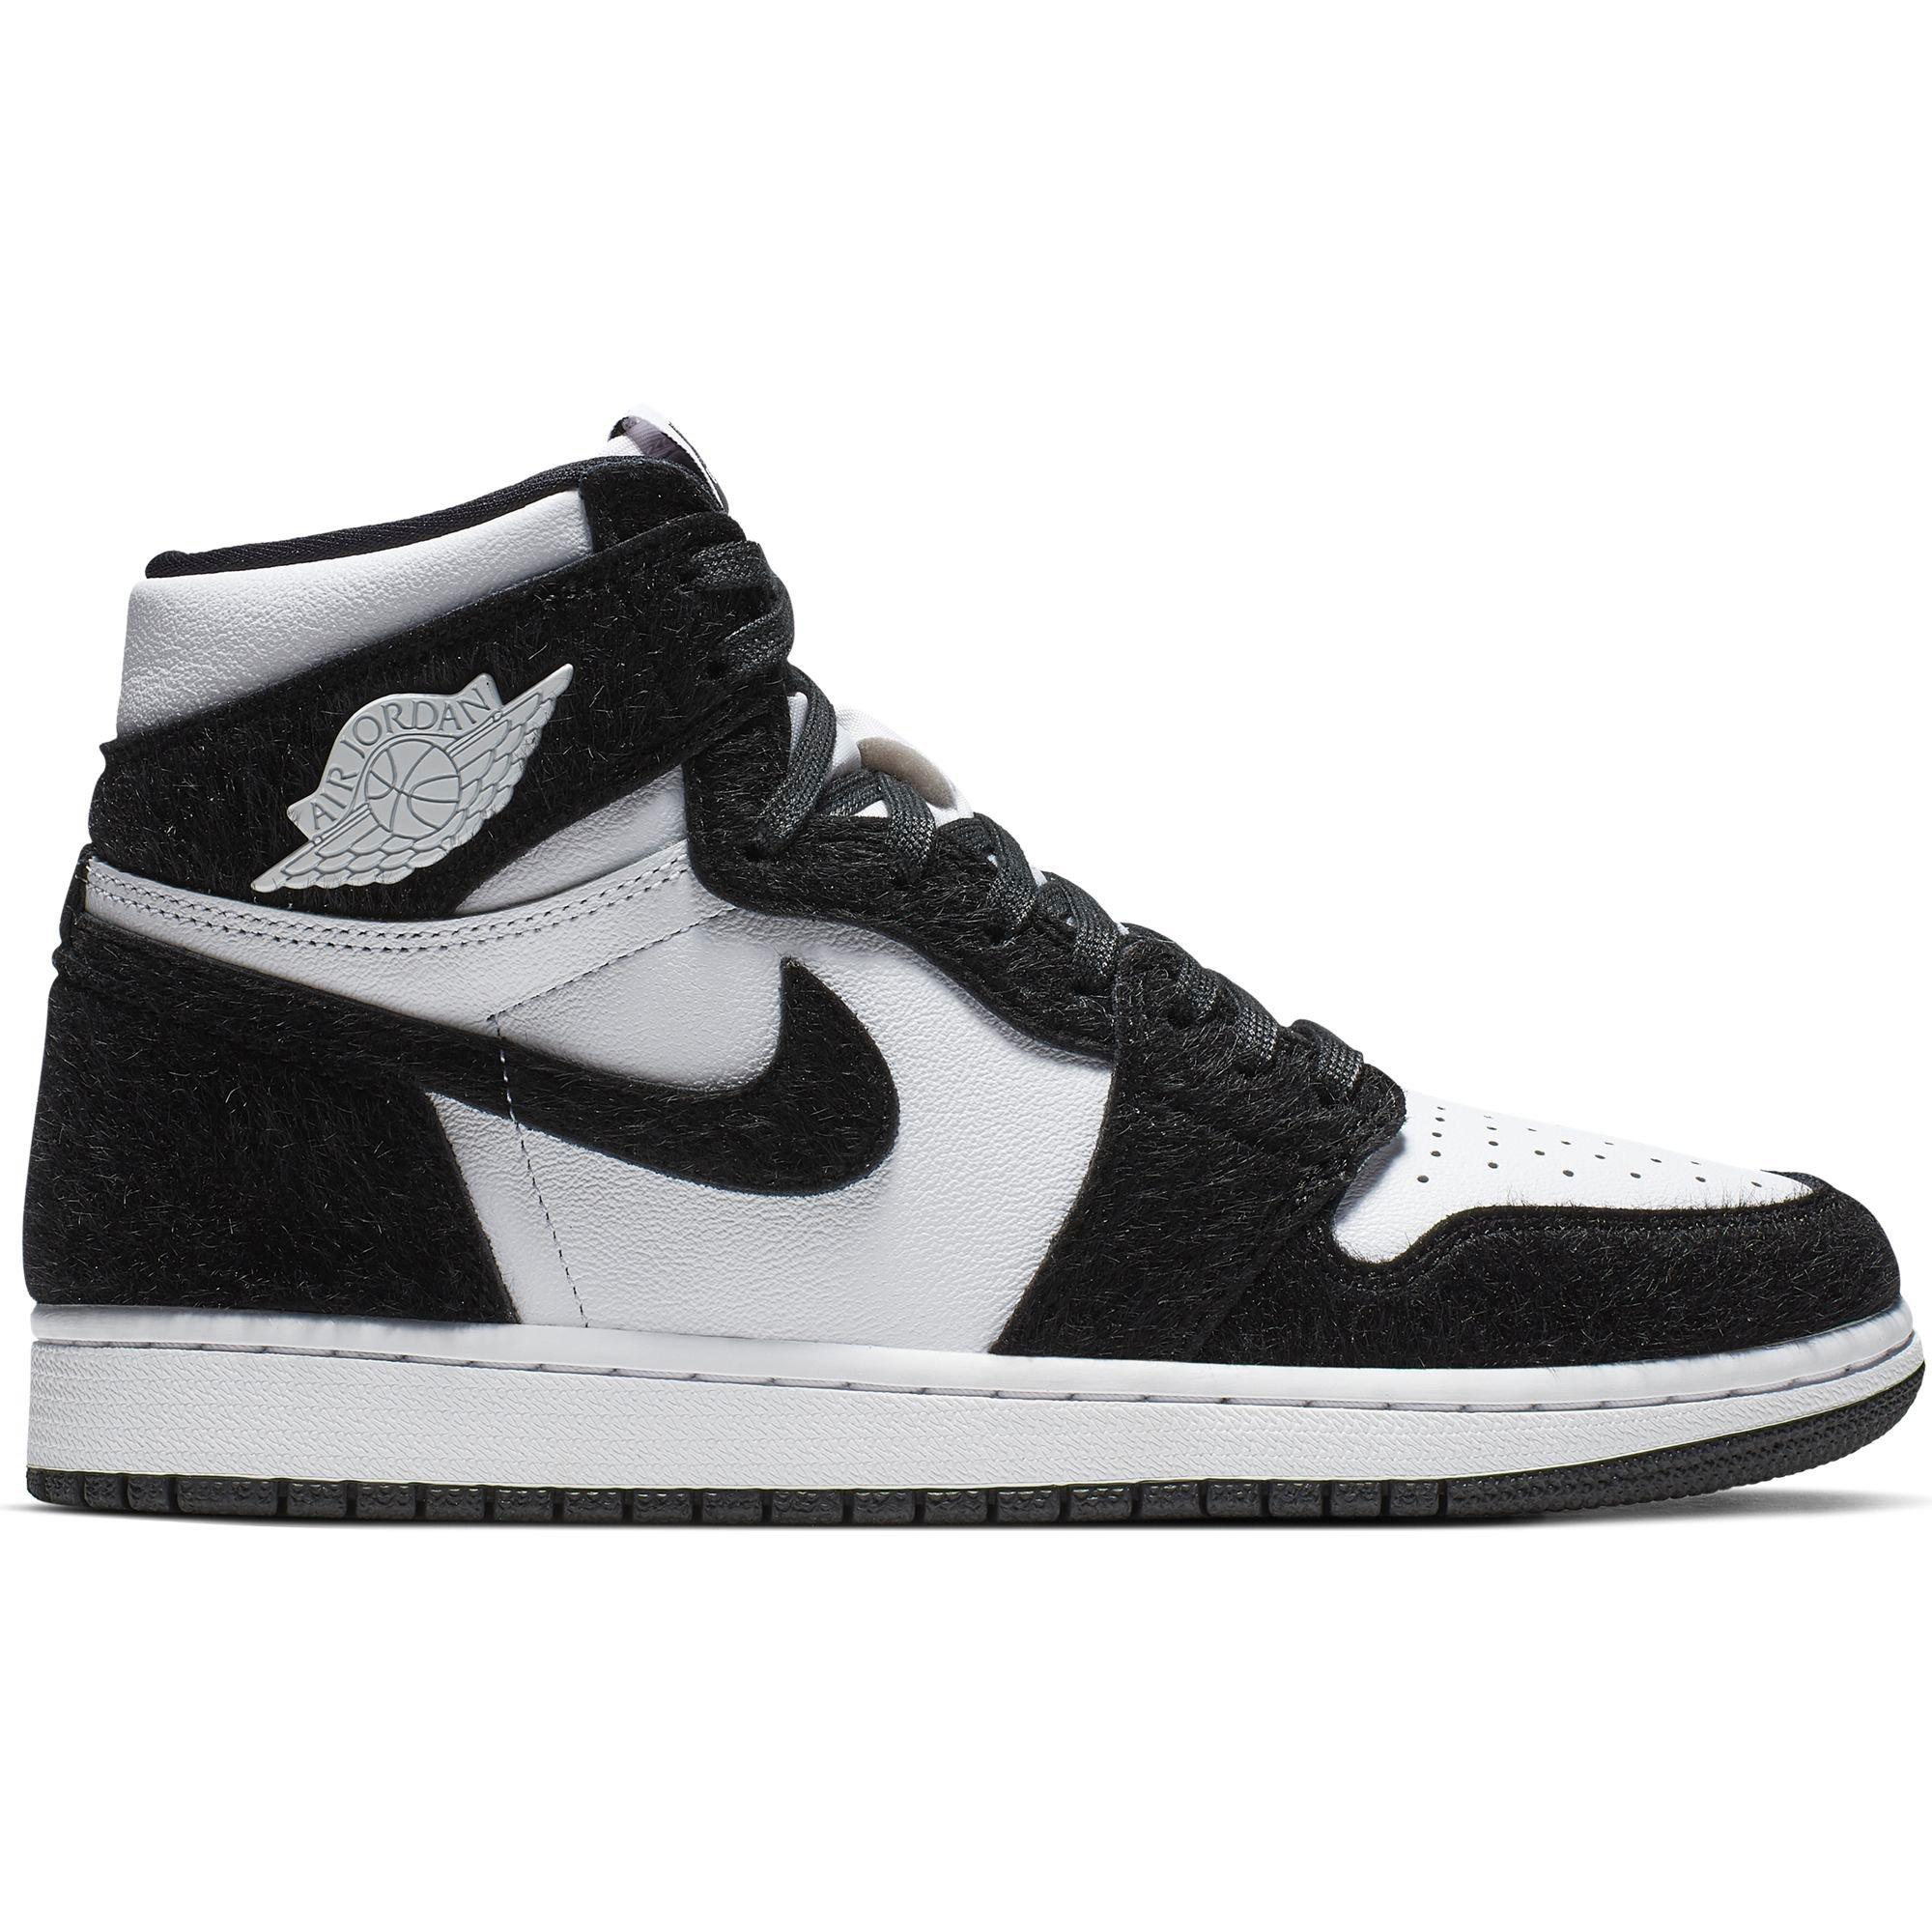 Sneaker Release: Air Jordan Retro 1 